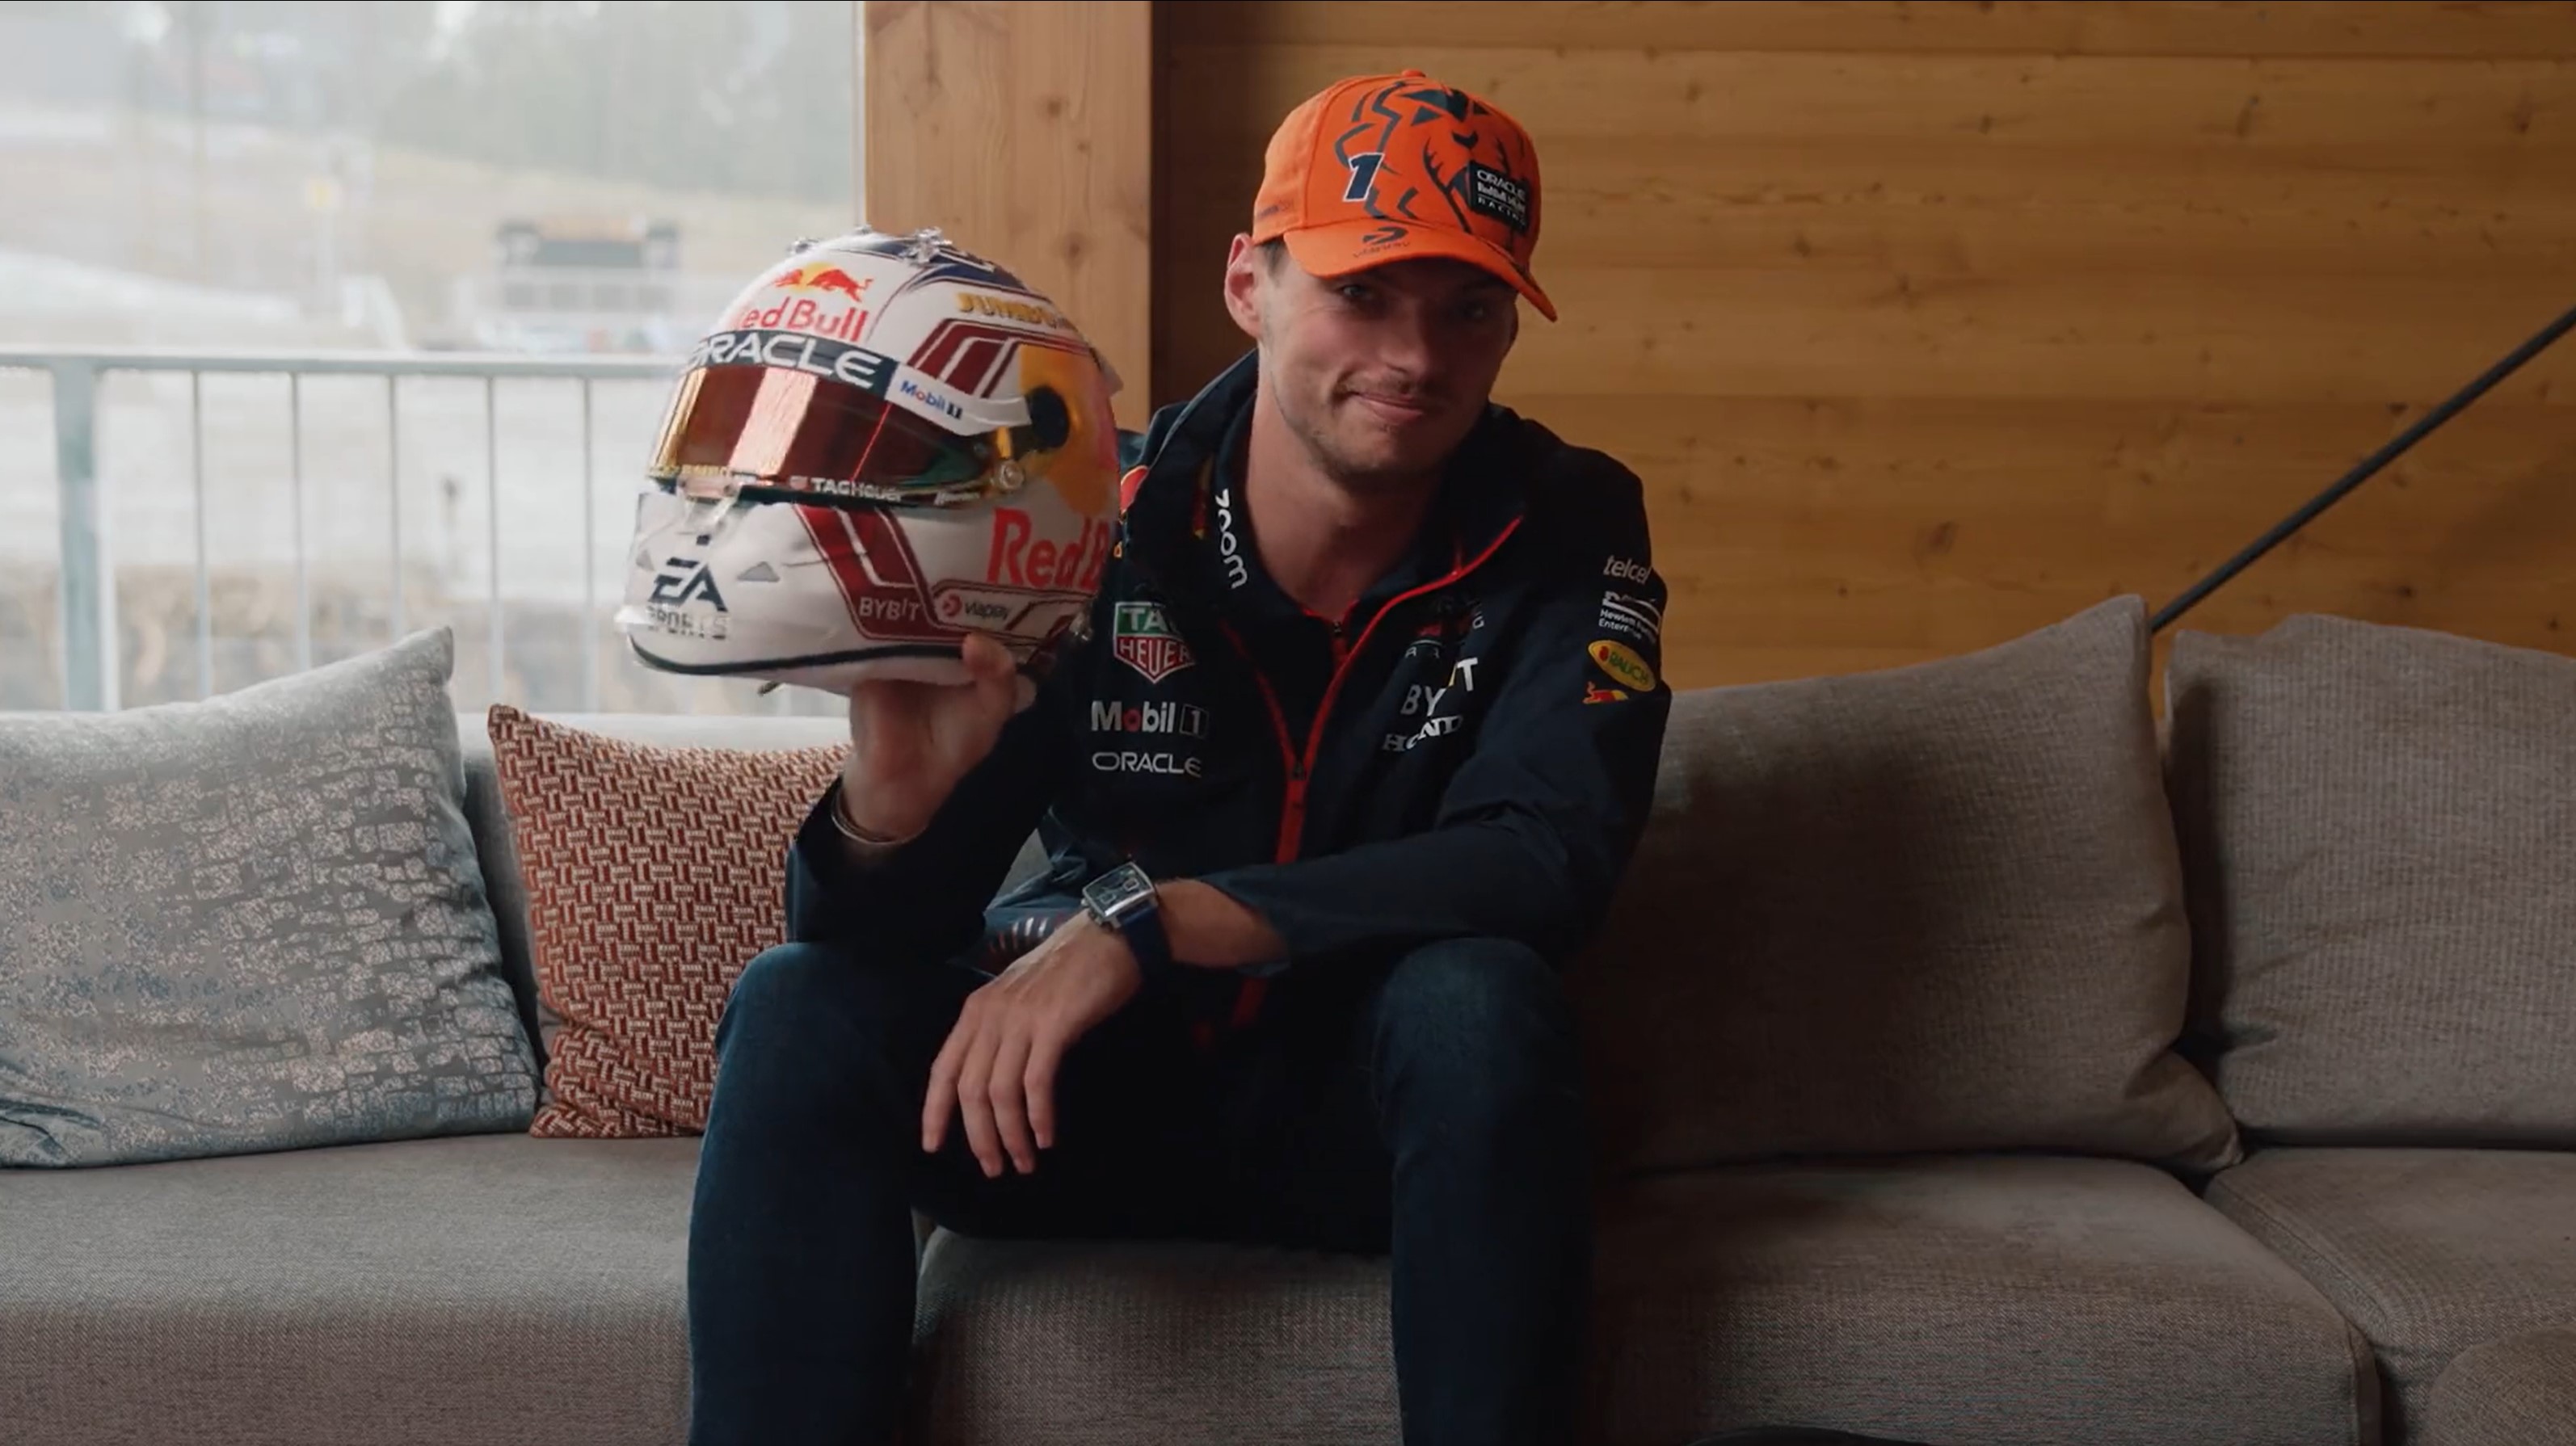 Verstappen reveals special helmet design for Austrian GP